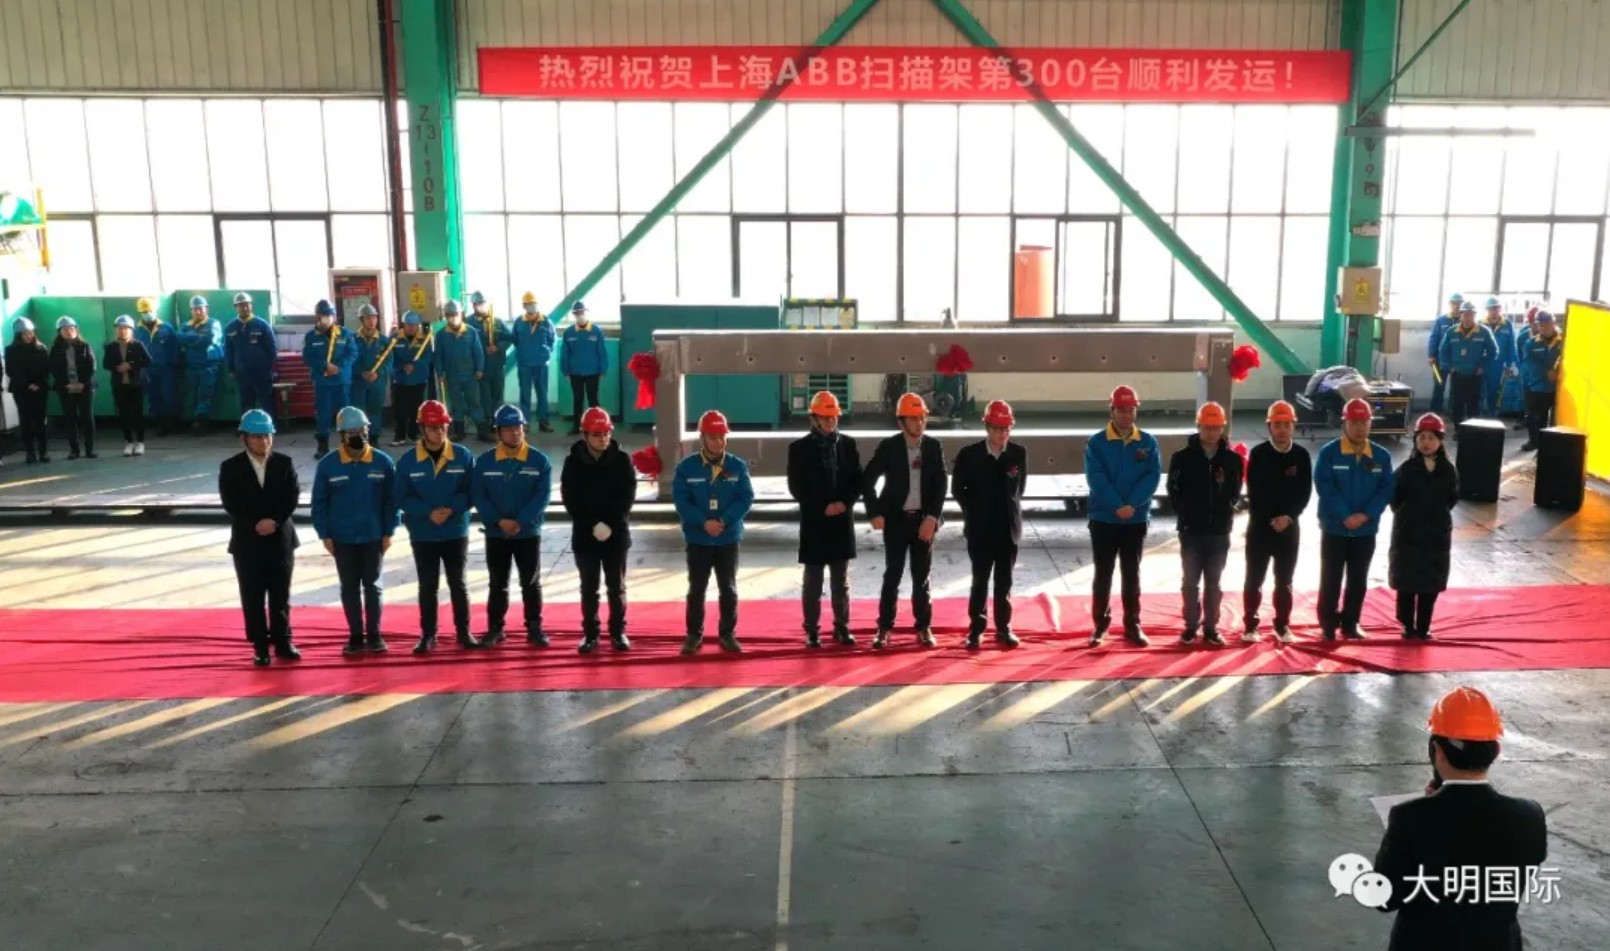 祝贺上海ABB第300台扫描架顺利发运，大明获“优秀战略供应商”